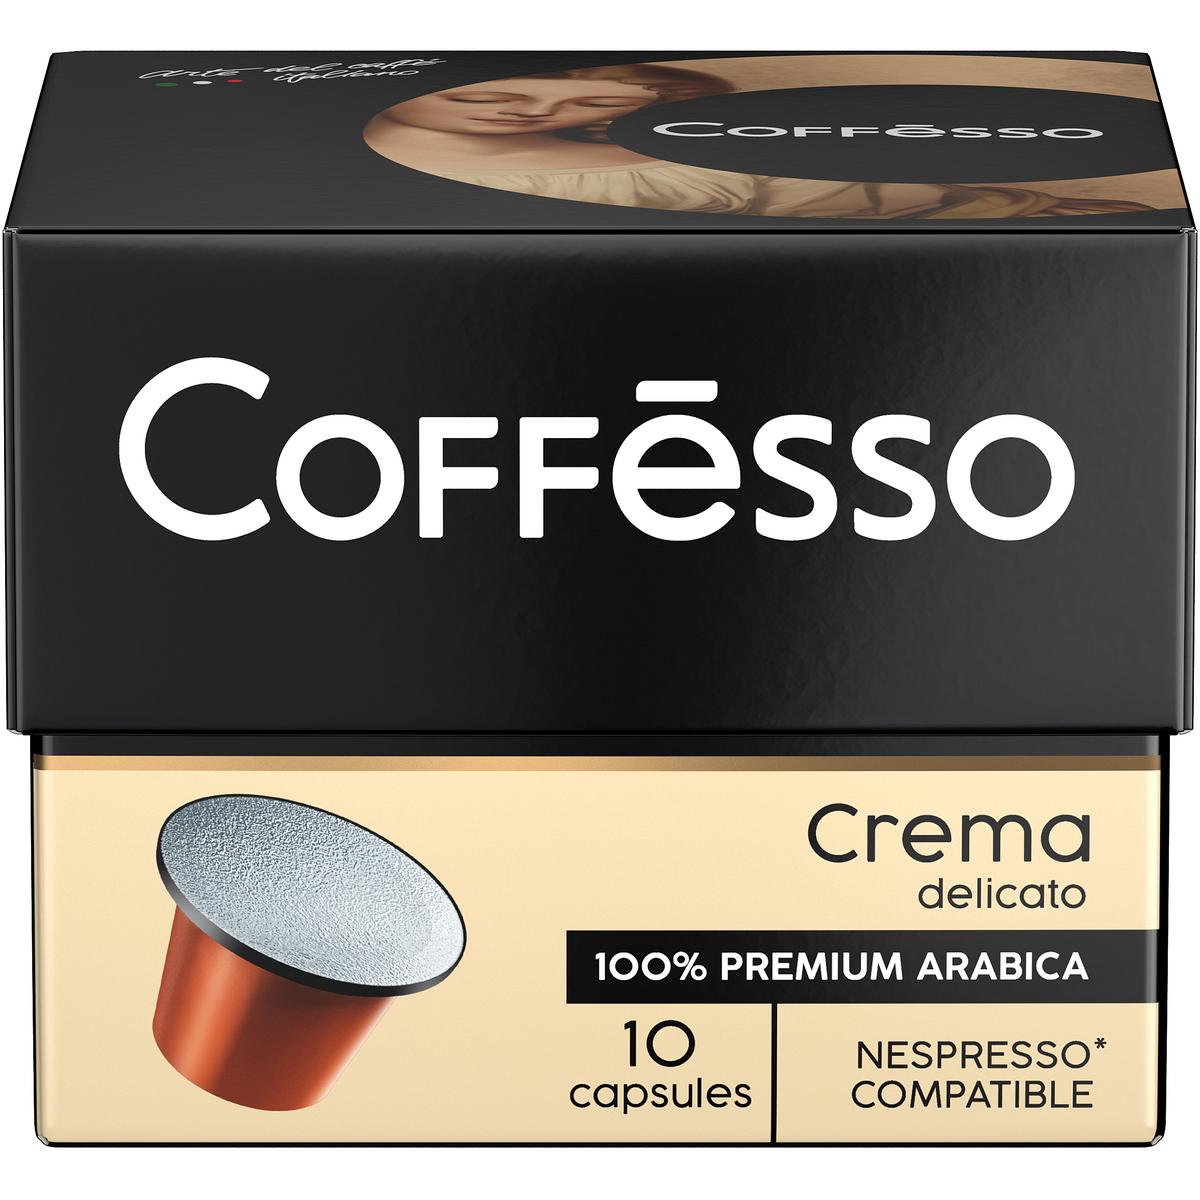 Купить кофе Coffesso Crema Delicato в капсулах 10 штук, цены на Мегамаркет | Артикул: 100023256556